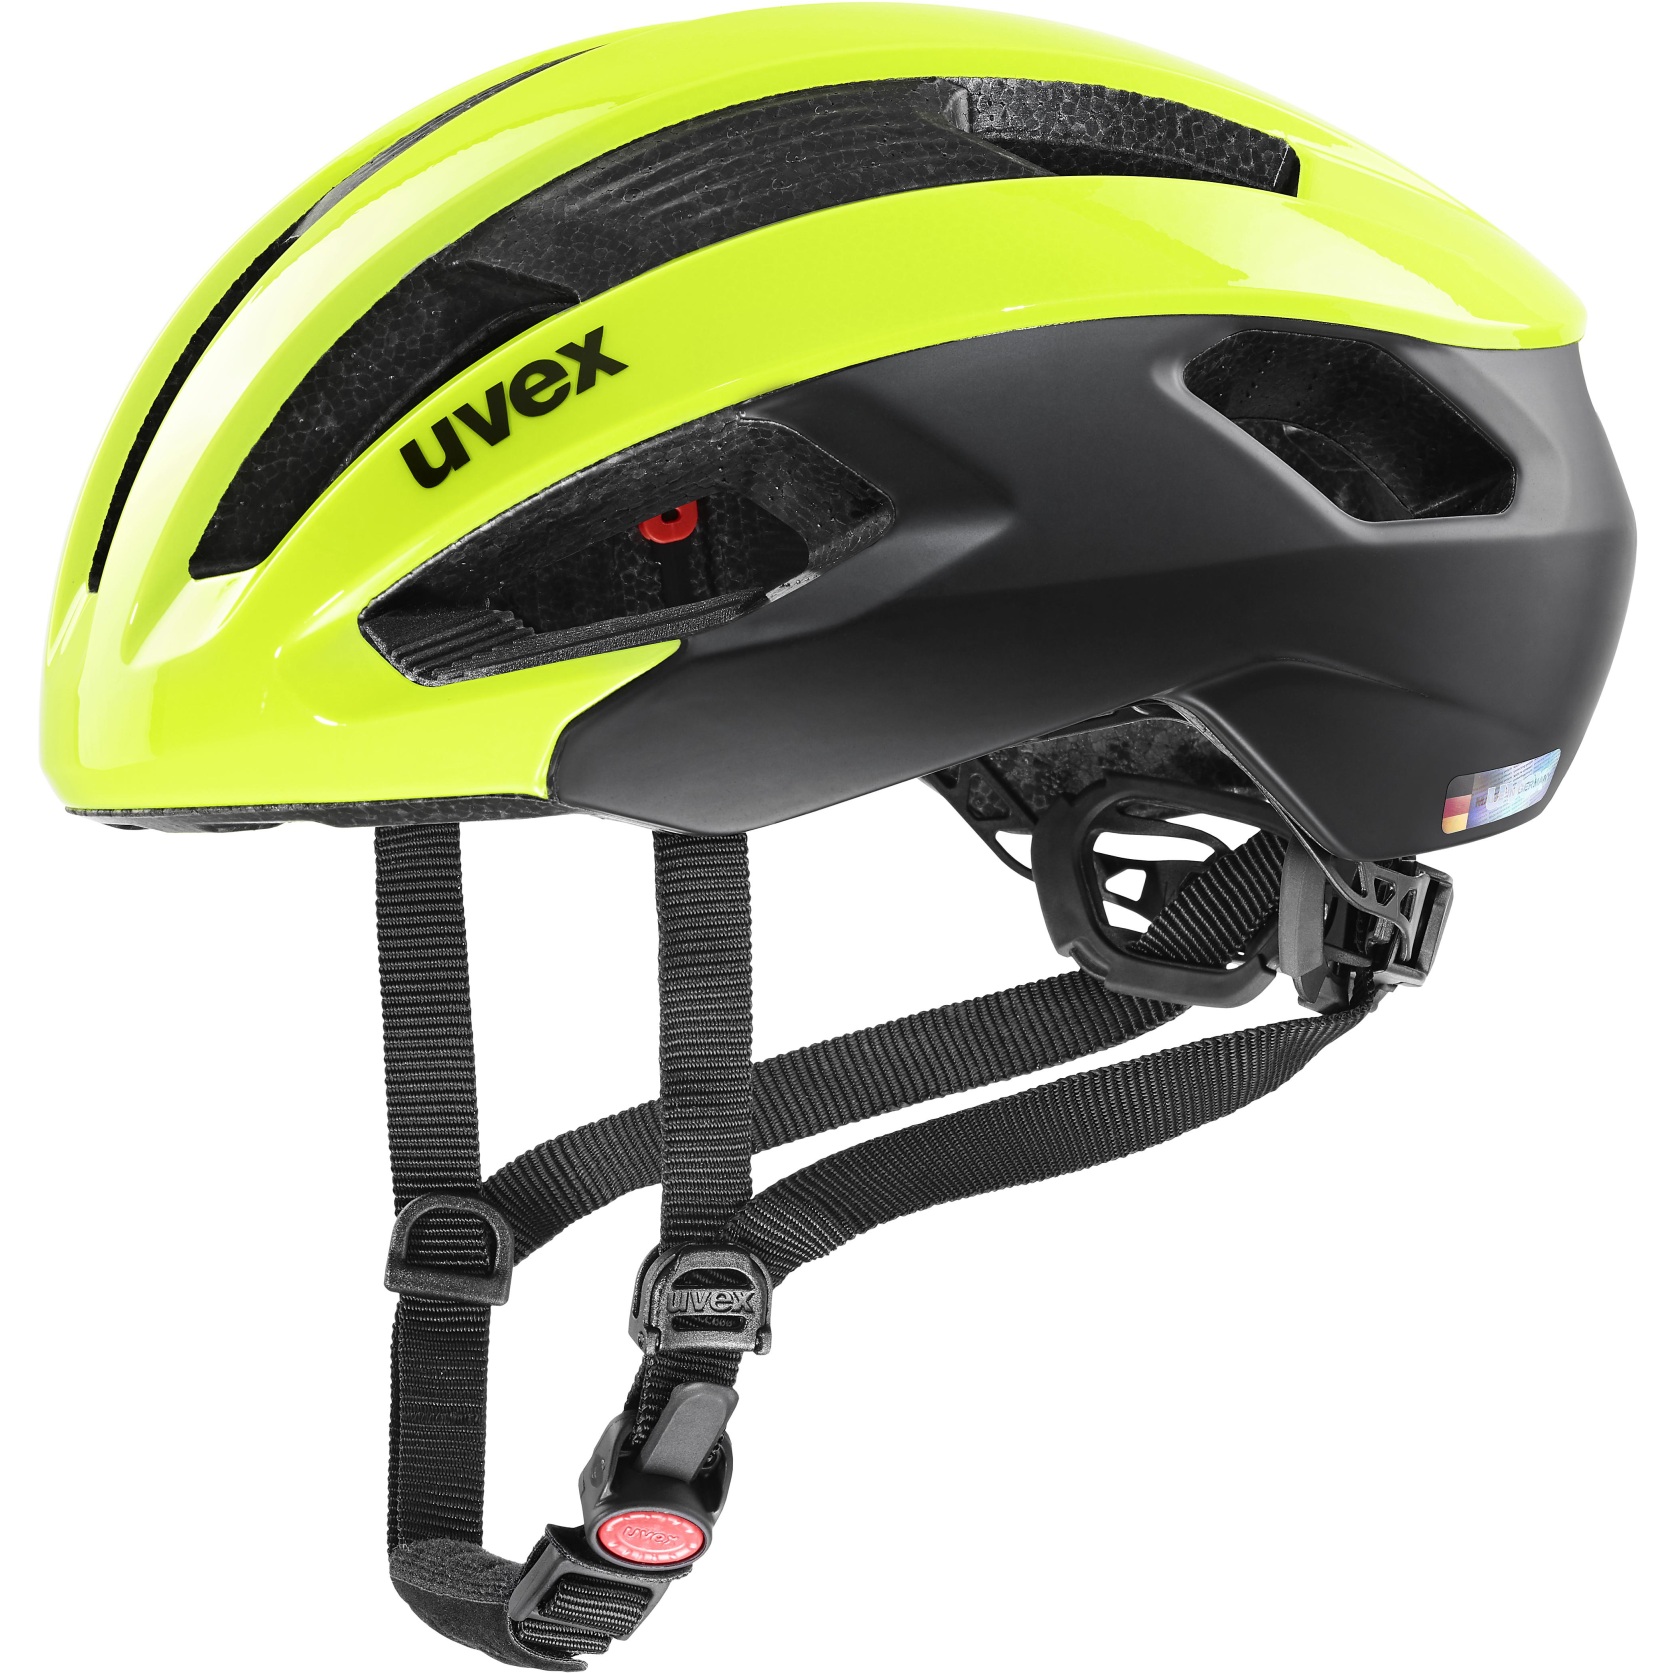 Produktbild von Uvex rise cc Helm - neon yellow-black mat